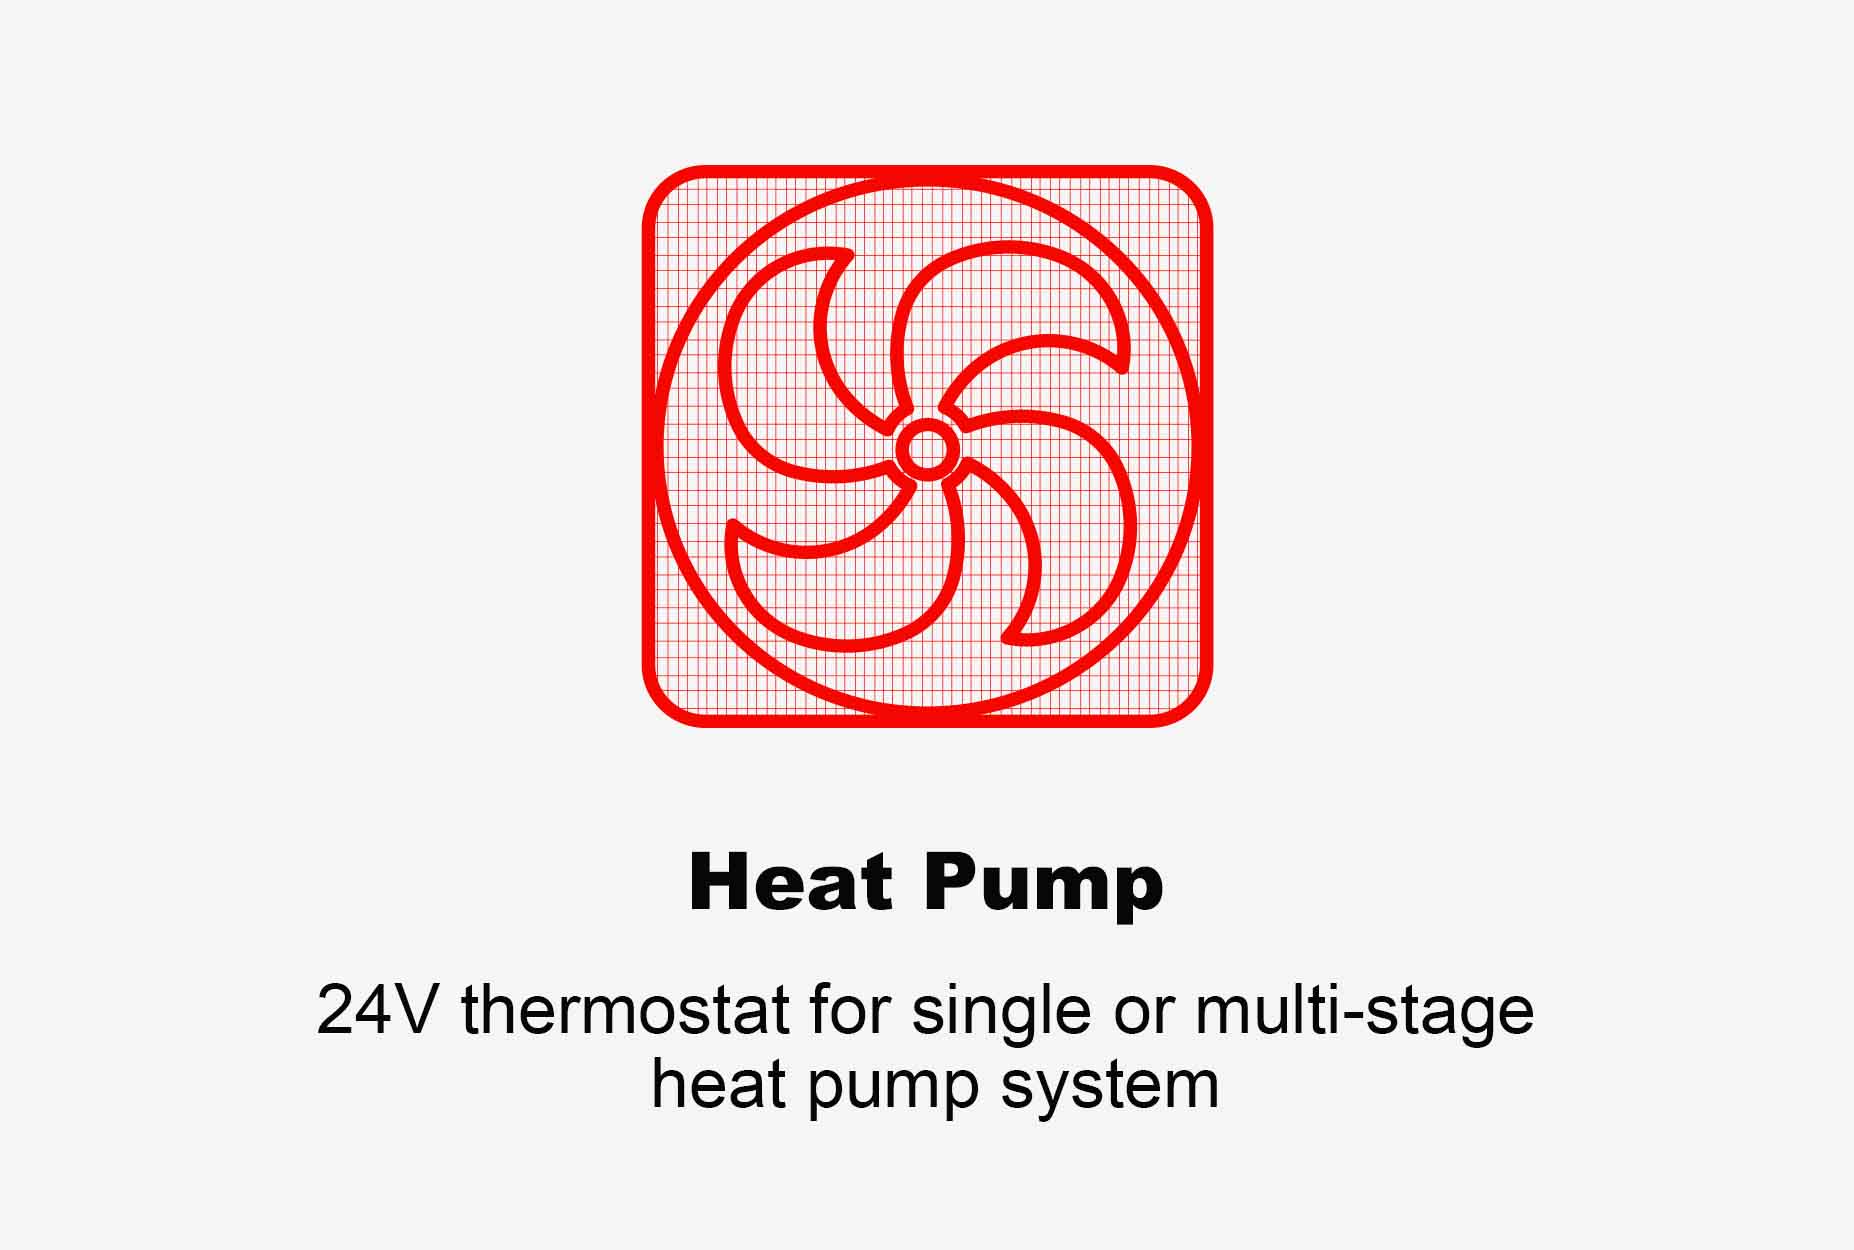 Programowalny termostat pompy ciepła Etop